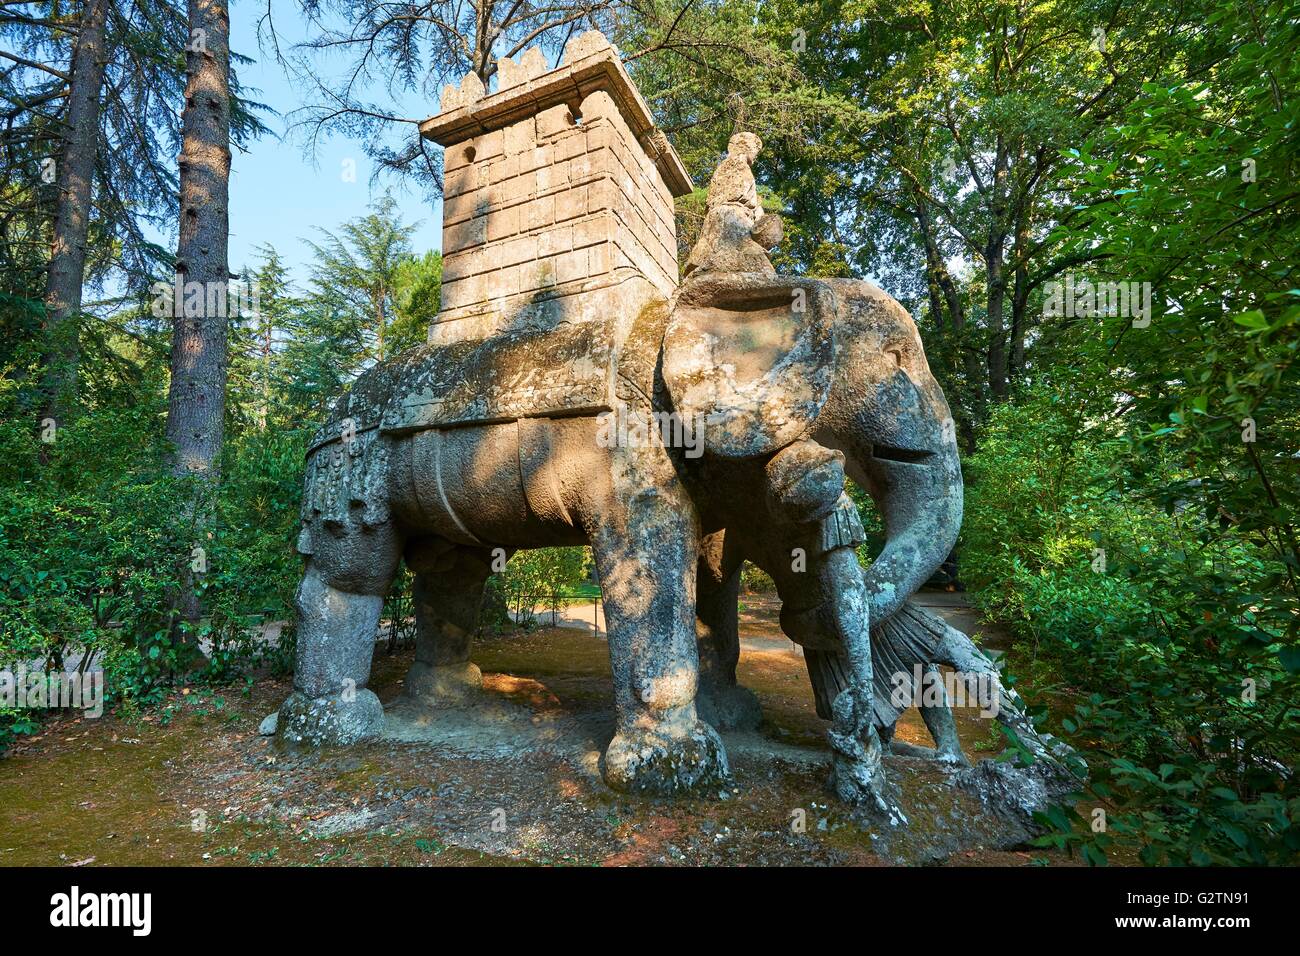 Escultura de un elefante, sacro bosco, bosque sagrado, parque de los monstruos, Parco dei mostri, Bomarzo, Lacio, Italia Foto de stock